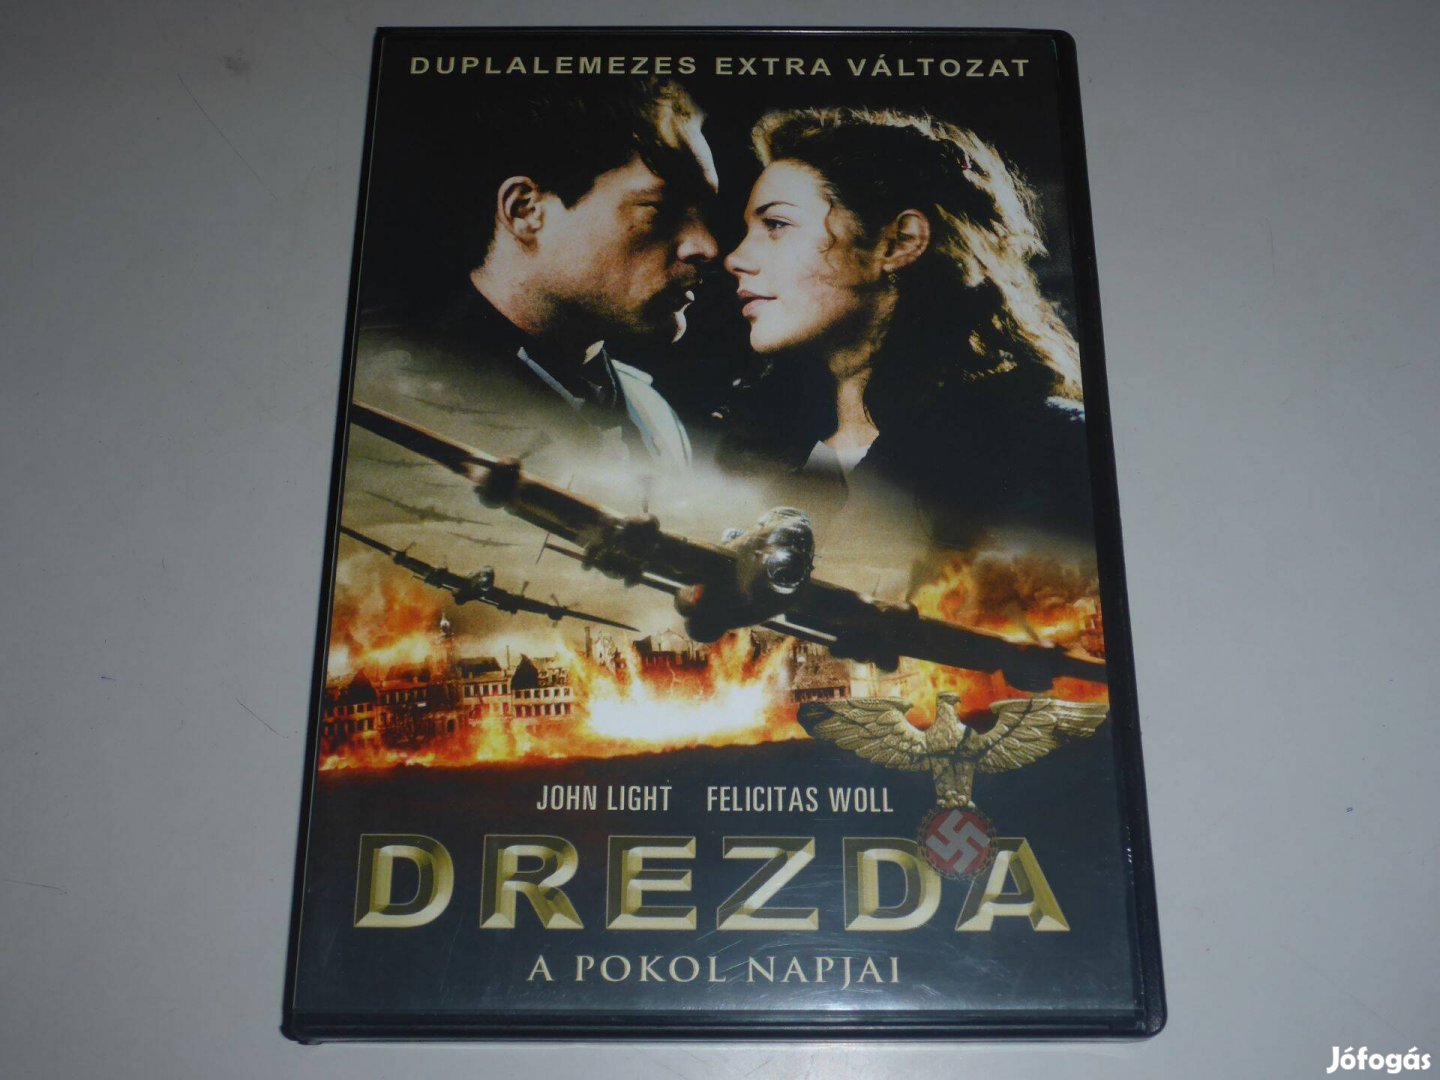 Drezda - A pokol napjai ( duplalemezes extra változat ) DVD film *